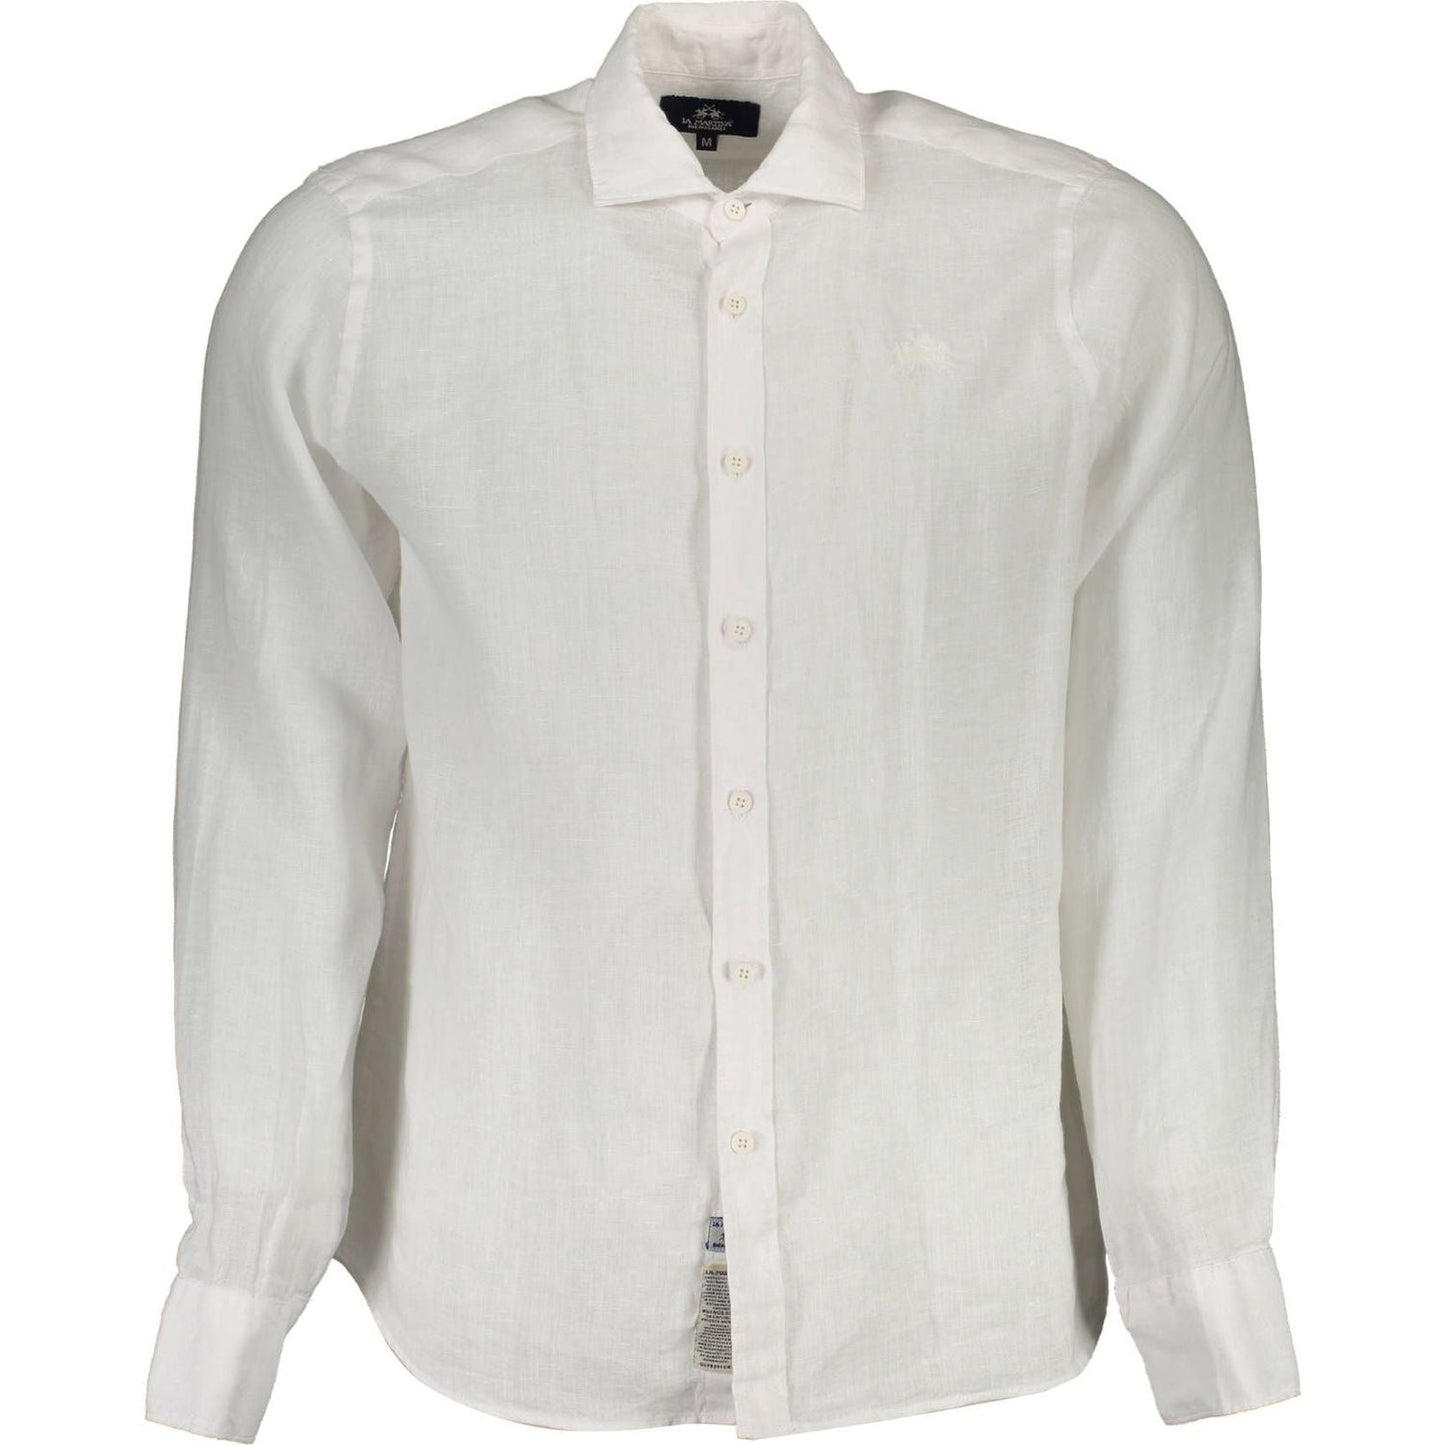 La MartinaElegant White Linen Long Sleeve ShirtMcRichard Designer Brands£139.00